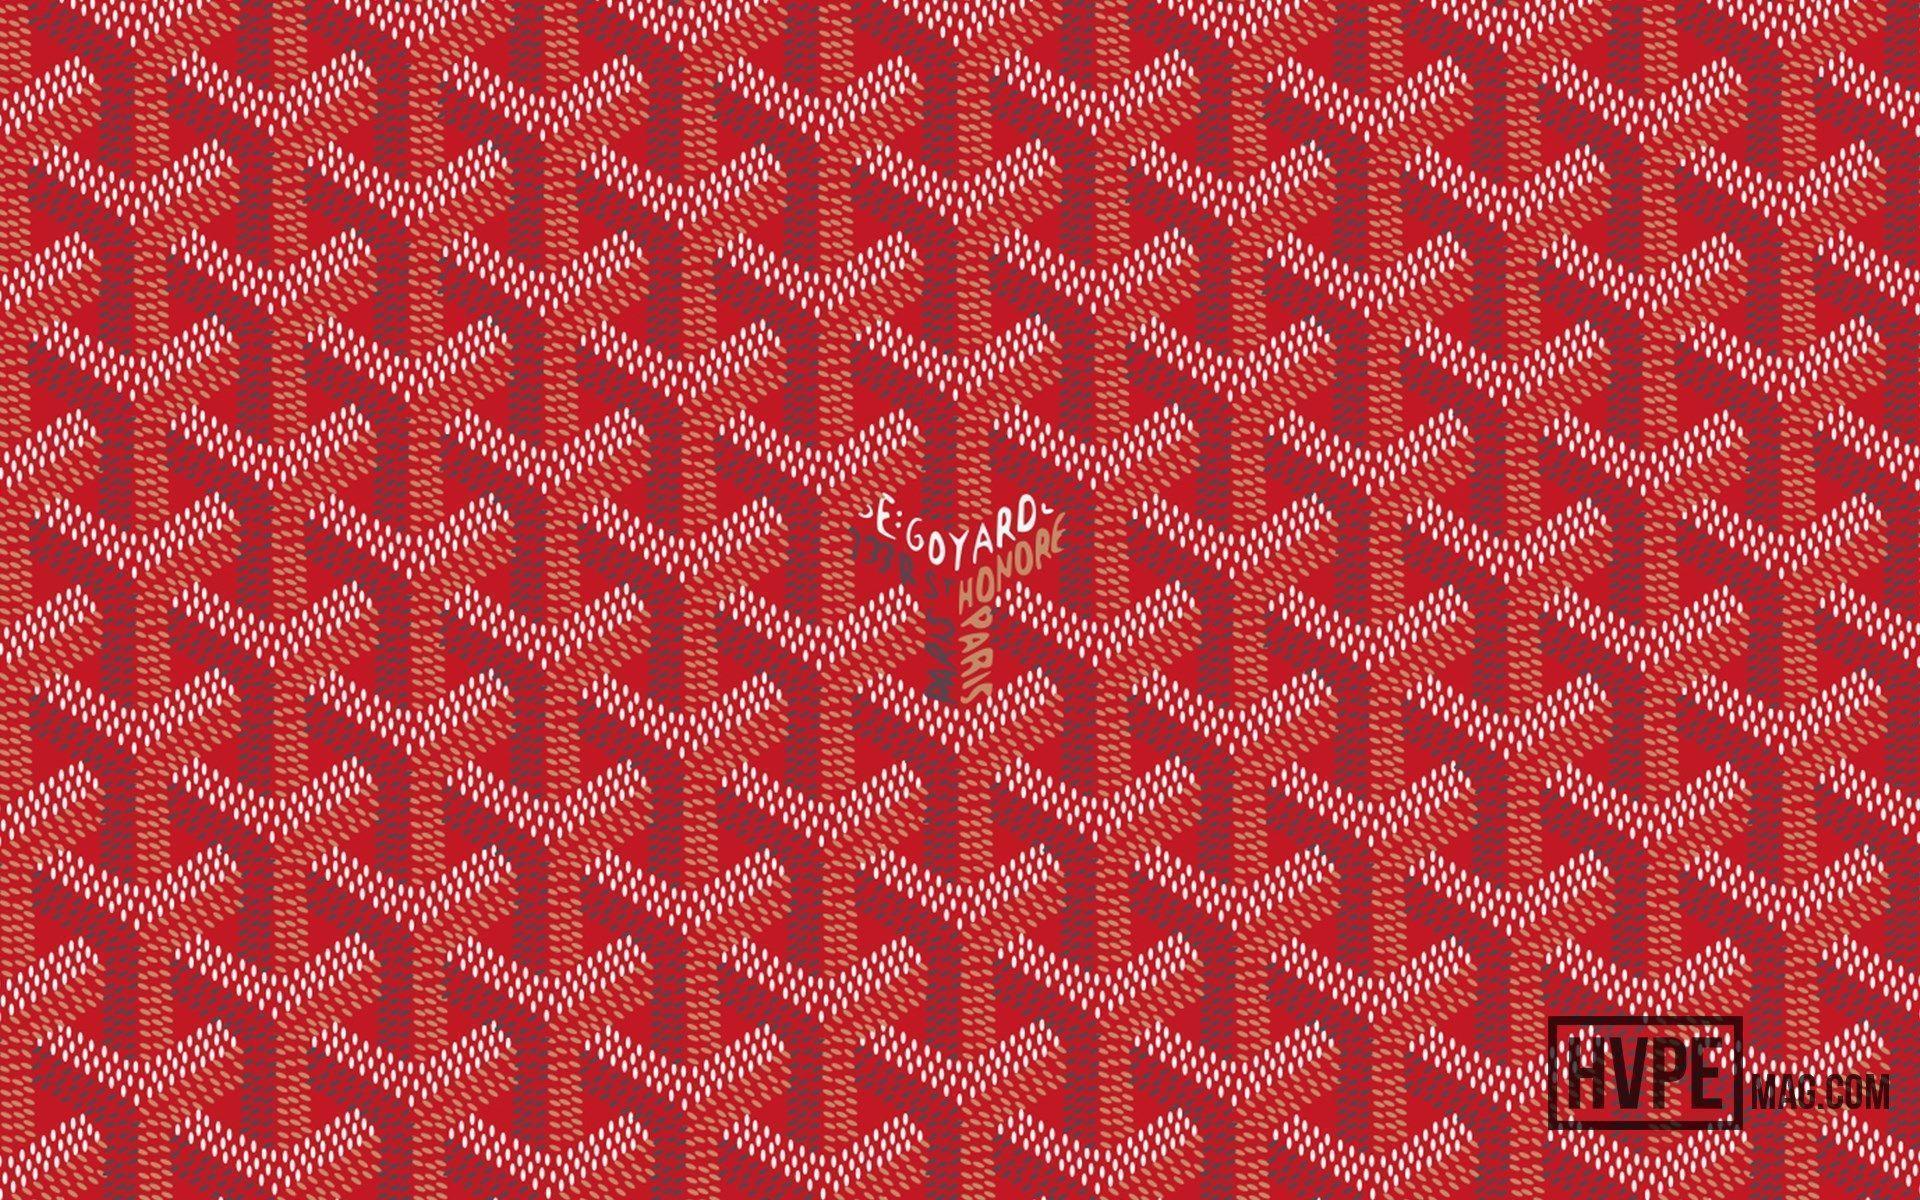 Goyard Red Logo - Goyard Wallpaper Red - Album on Imgur